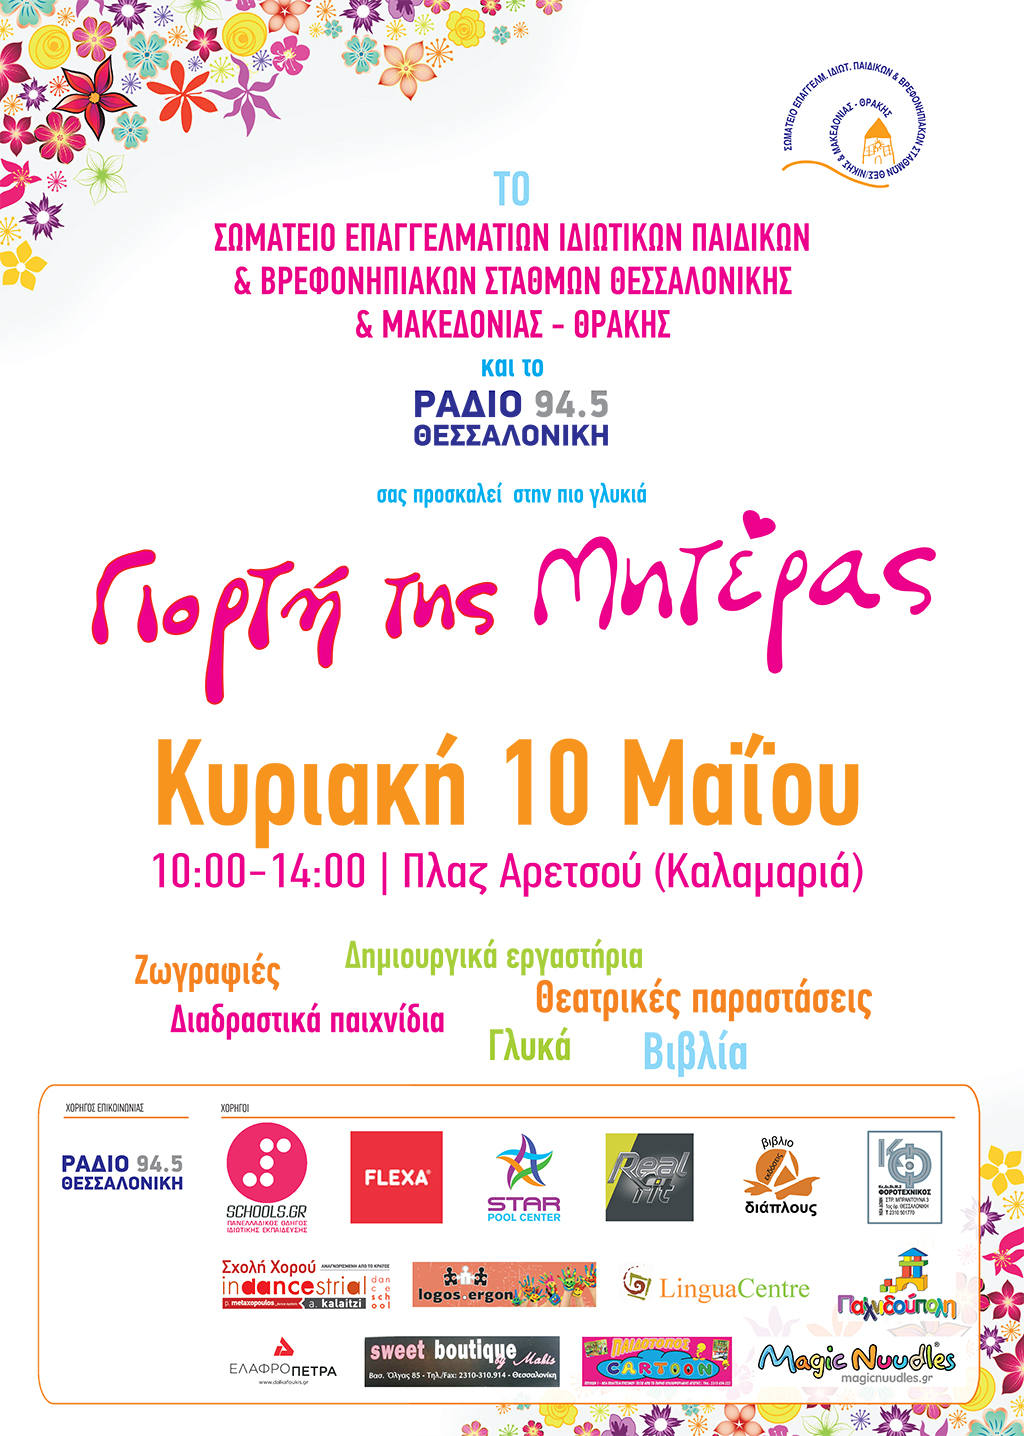 Εκδήλωση για τη ΓΙΟΡΤΗ ΤΗΣ ΜΗΤΕΡΑΣ από το Σωματείο Επαγγελματιών Ιδιωτικών Παιδικών & Βρεφονηπιακών Σταθμών Θεσσαλονίκης και Μακεδονίας